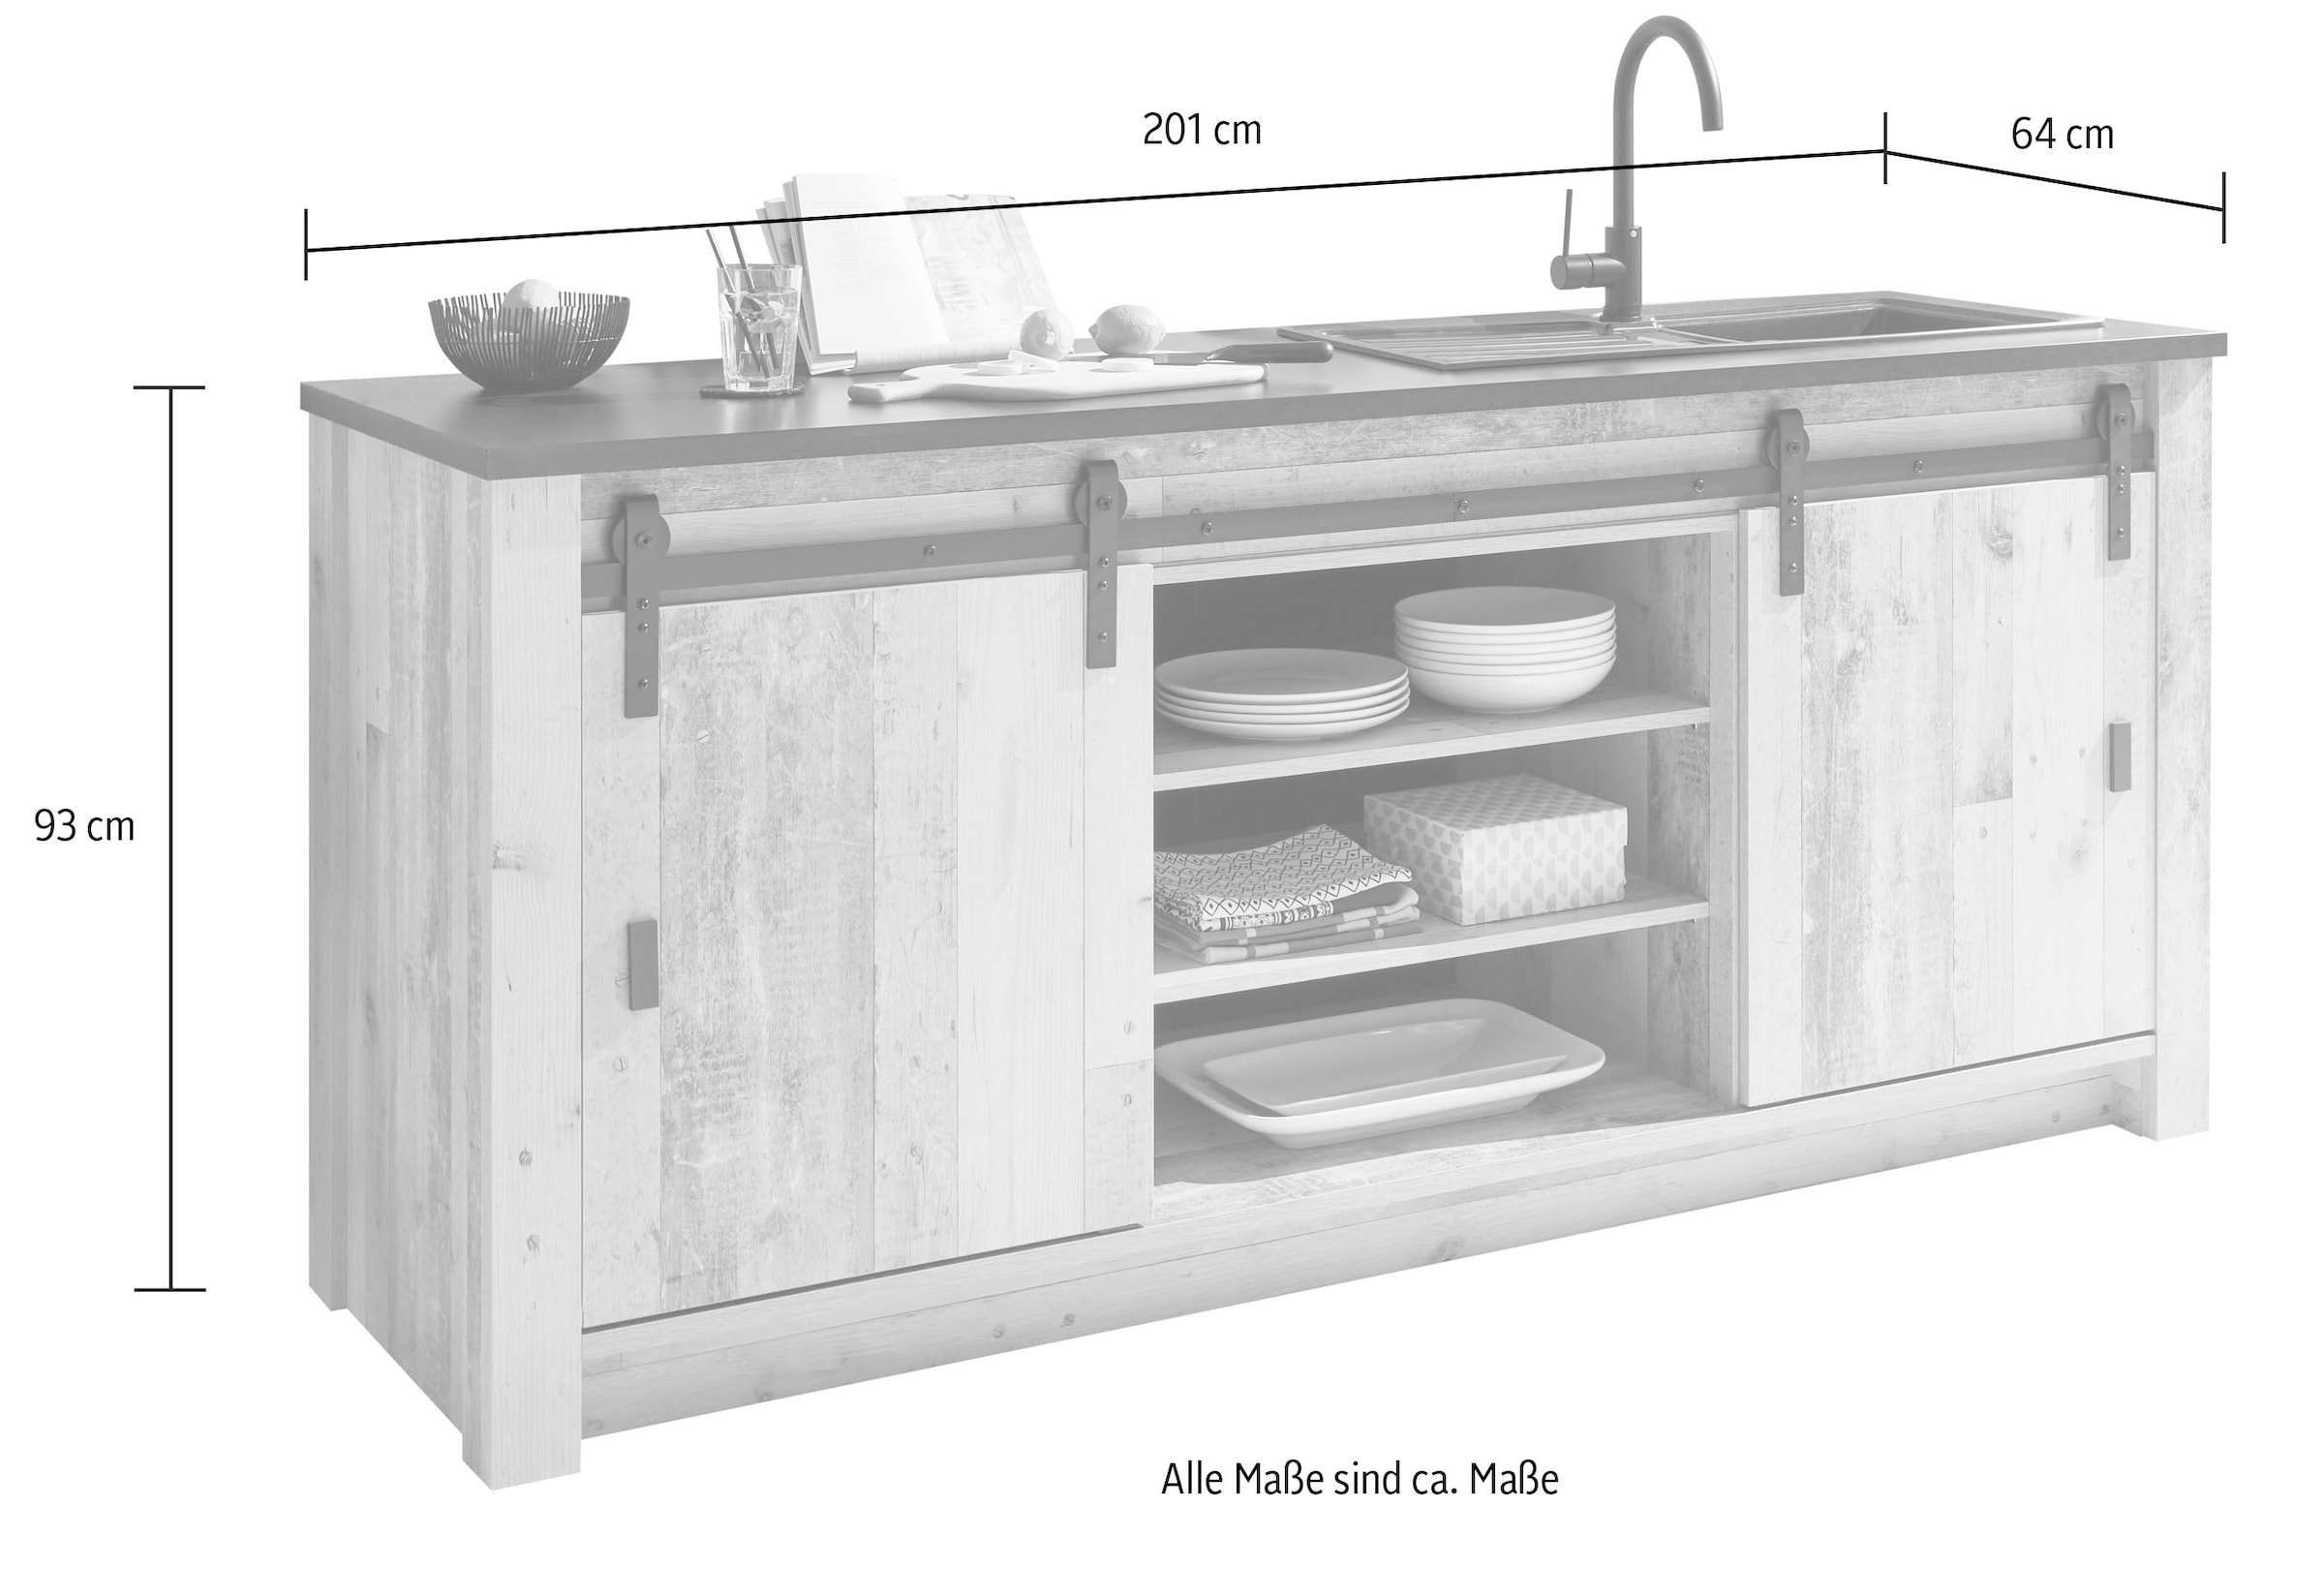 Home affaire Küche »Sherwood«, Breite 201 cm, ohne E-Geräte